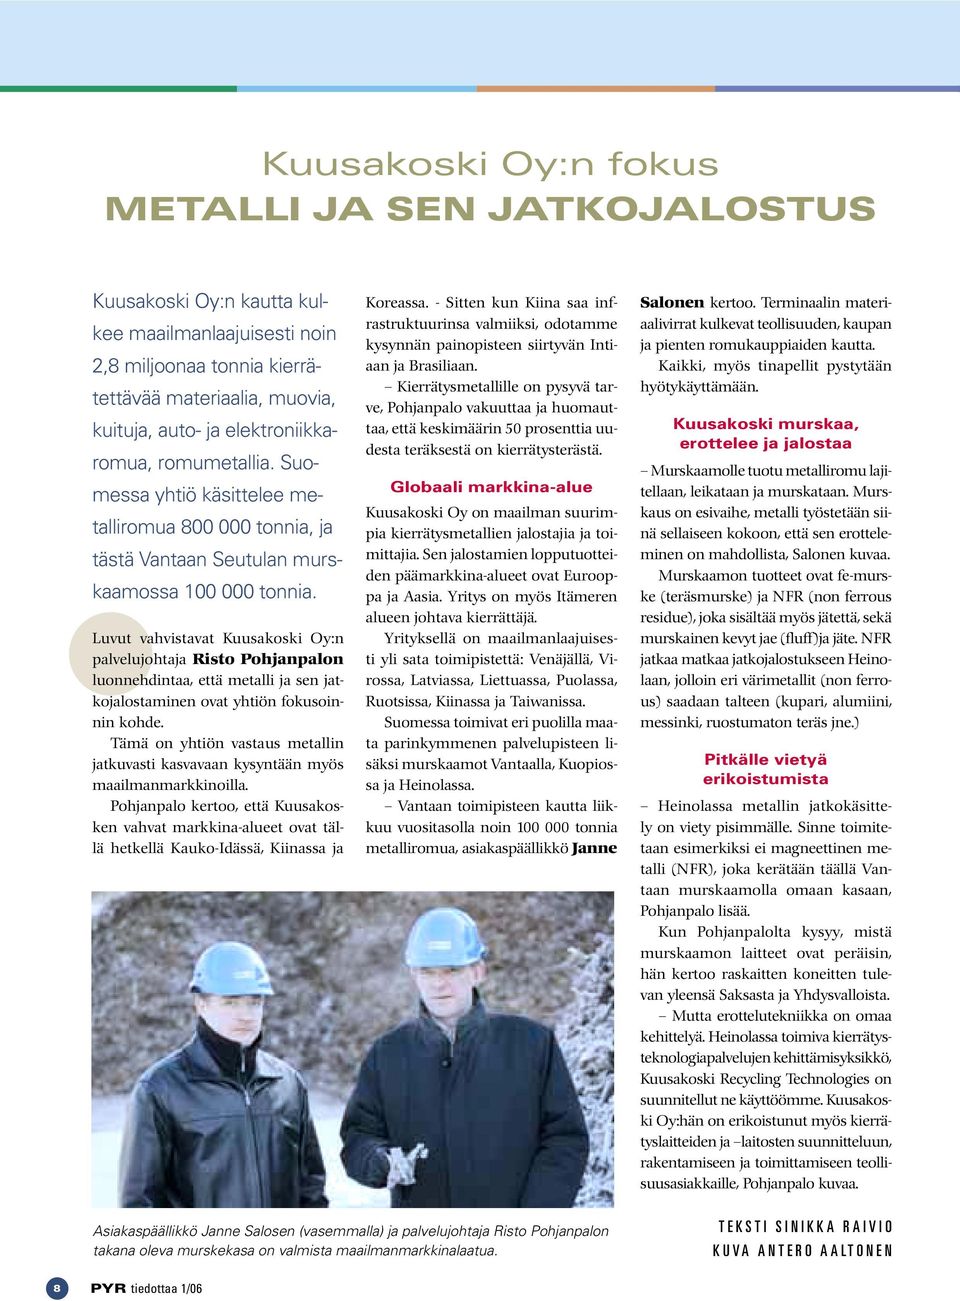 Luvut vahvistavat Kuusakoski Oy:n palvelujohtaja Risto Pohjanpalon luonnehdintaa, että metalli ja sen jatkojalostaminen ovat yhtiön fokusoinnin kohde.